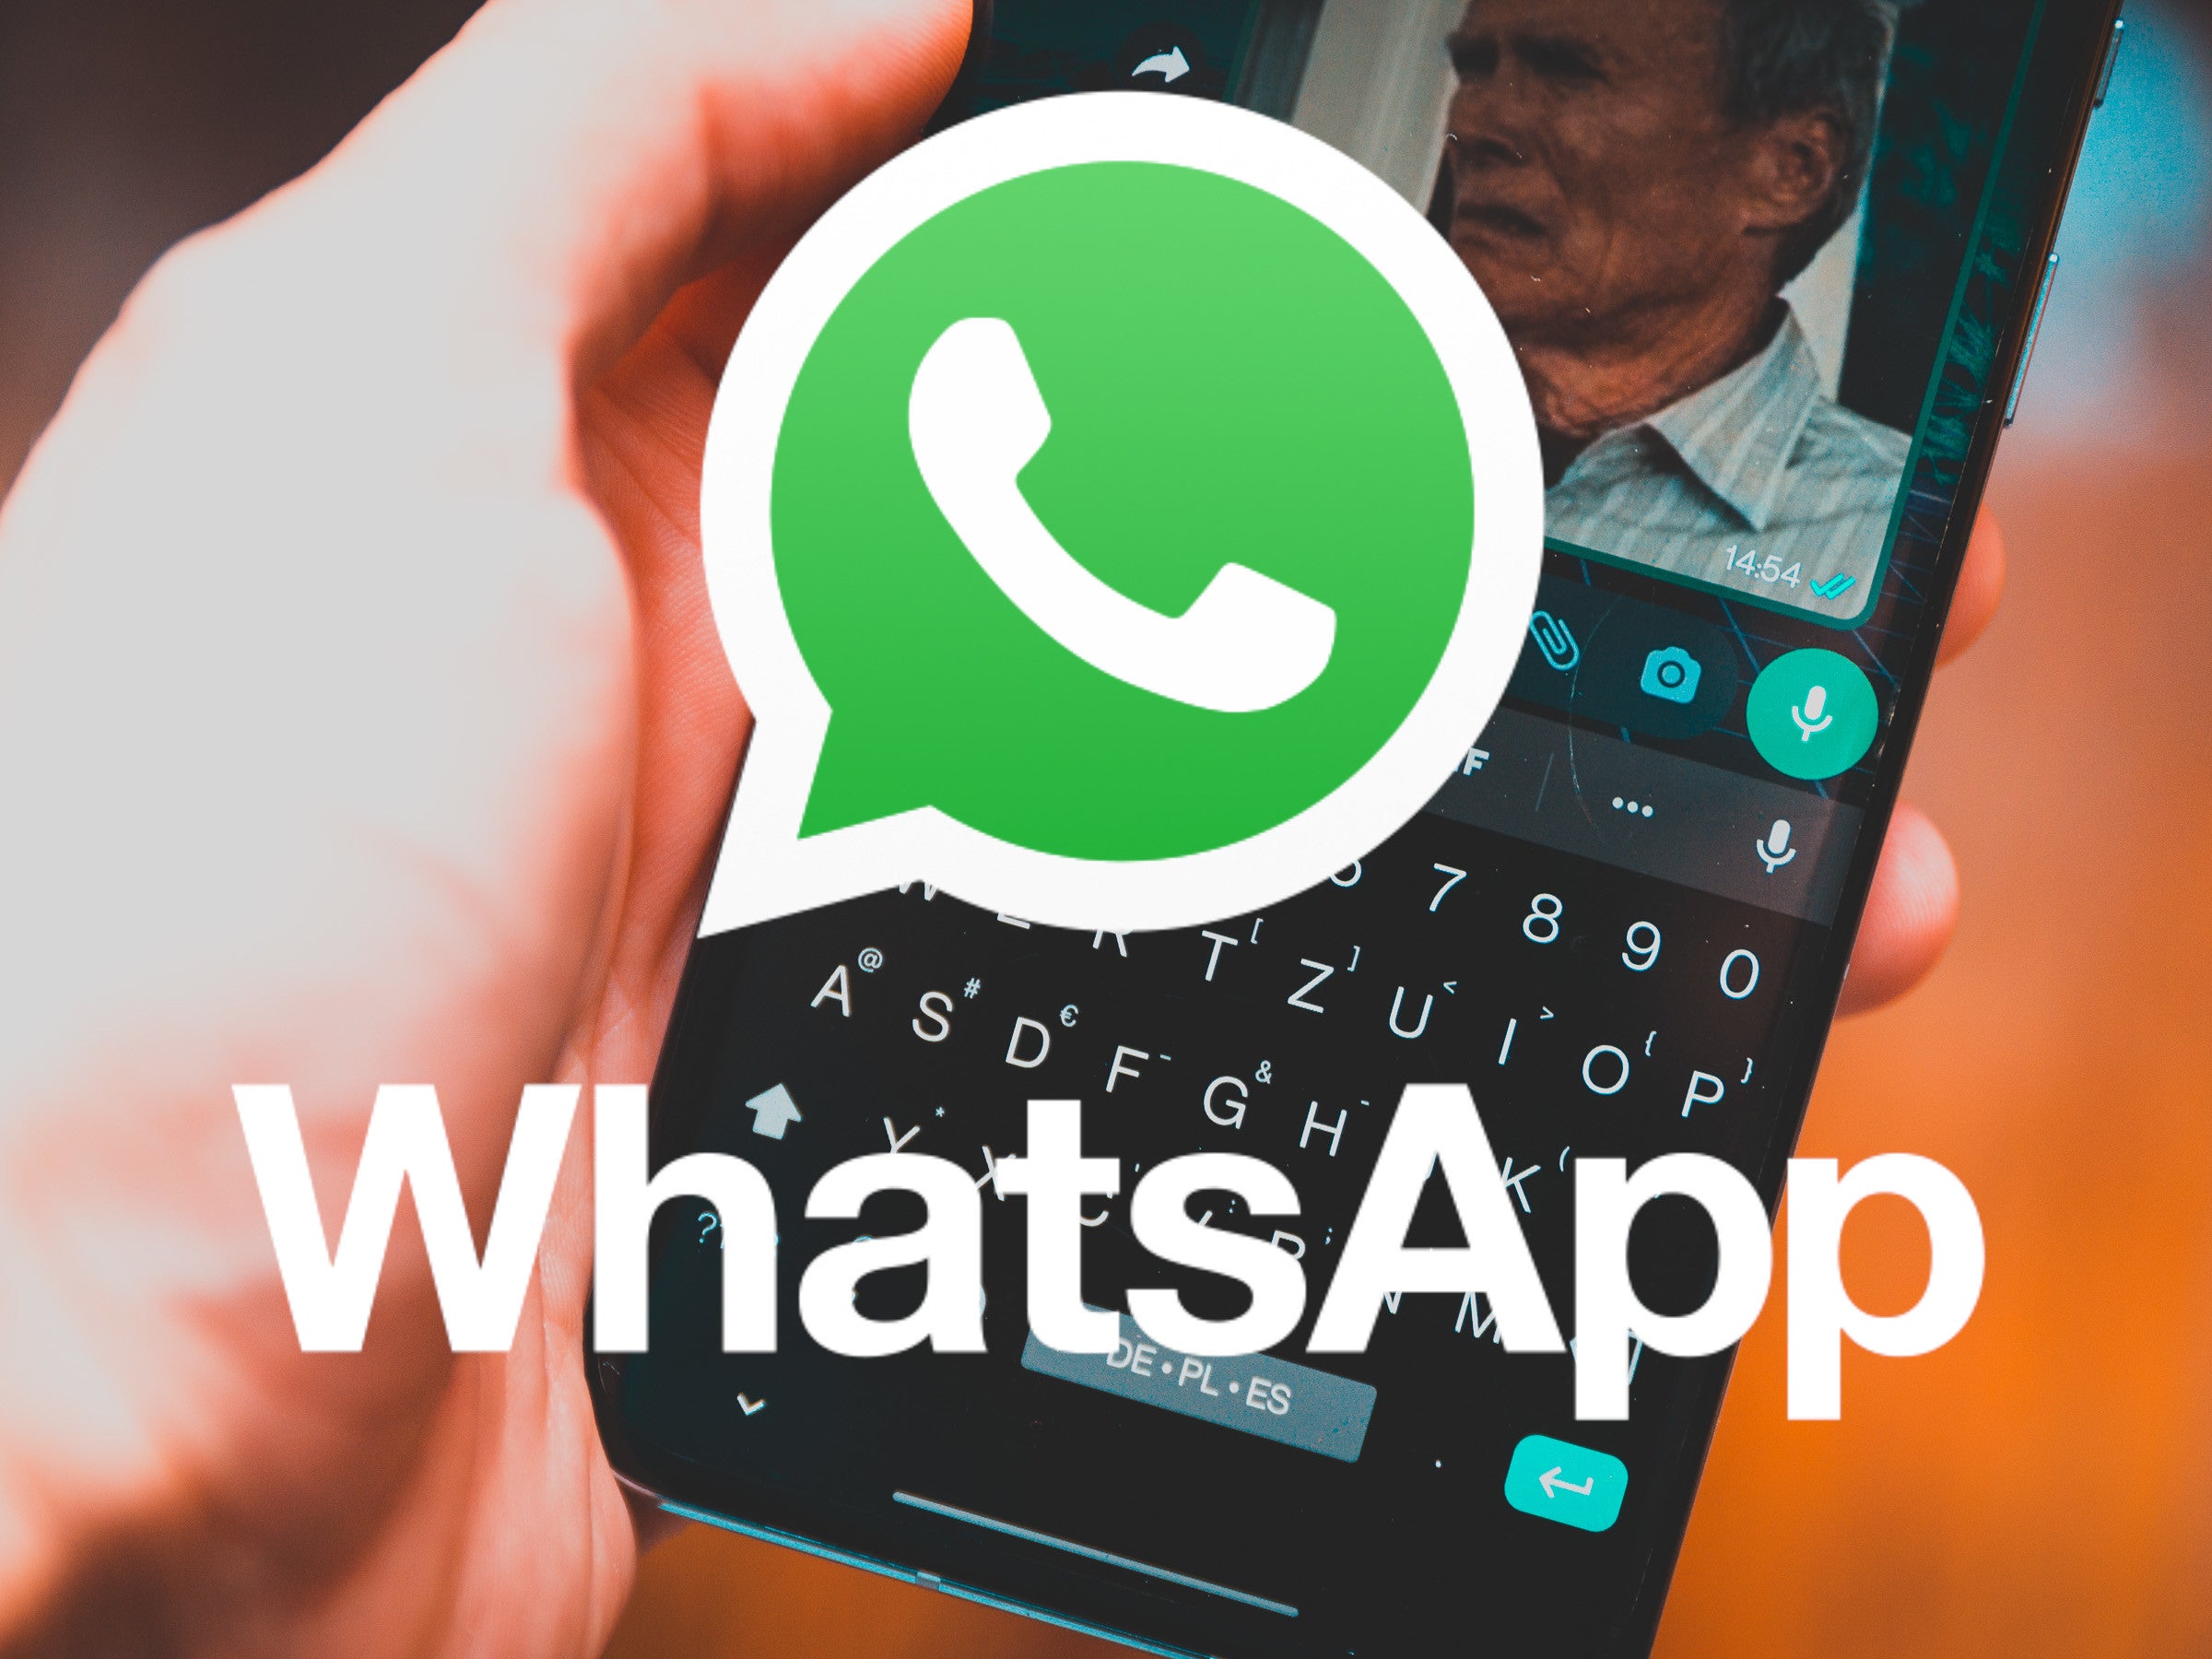 #WhatsApp: Deshalb sollten Kinder ihre Eltern warnen